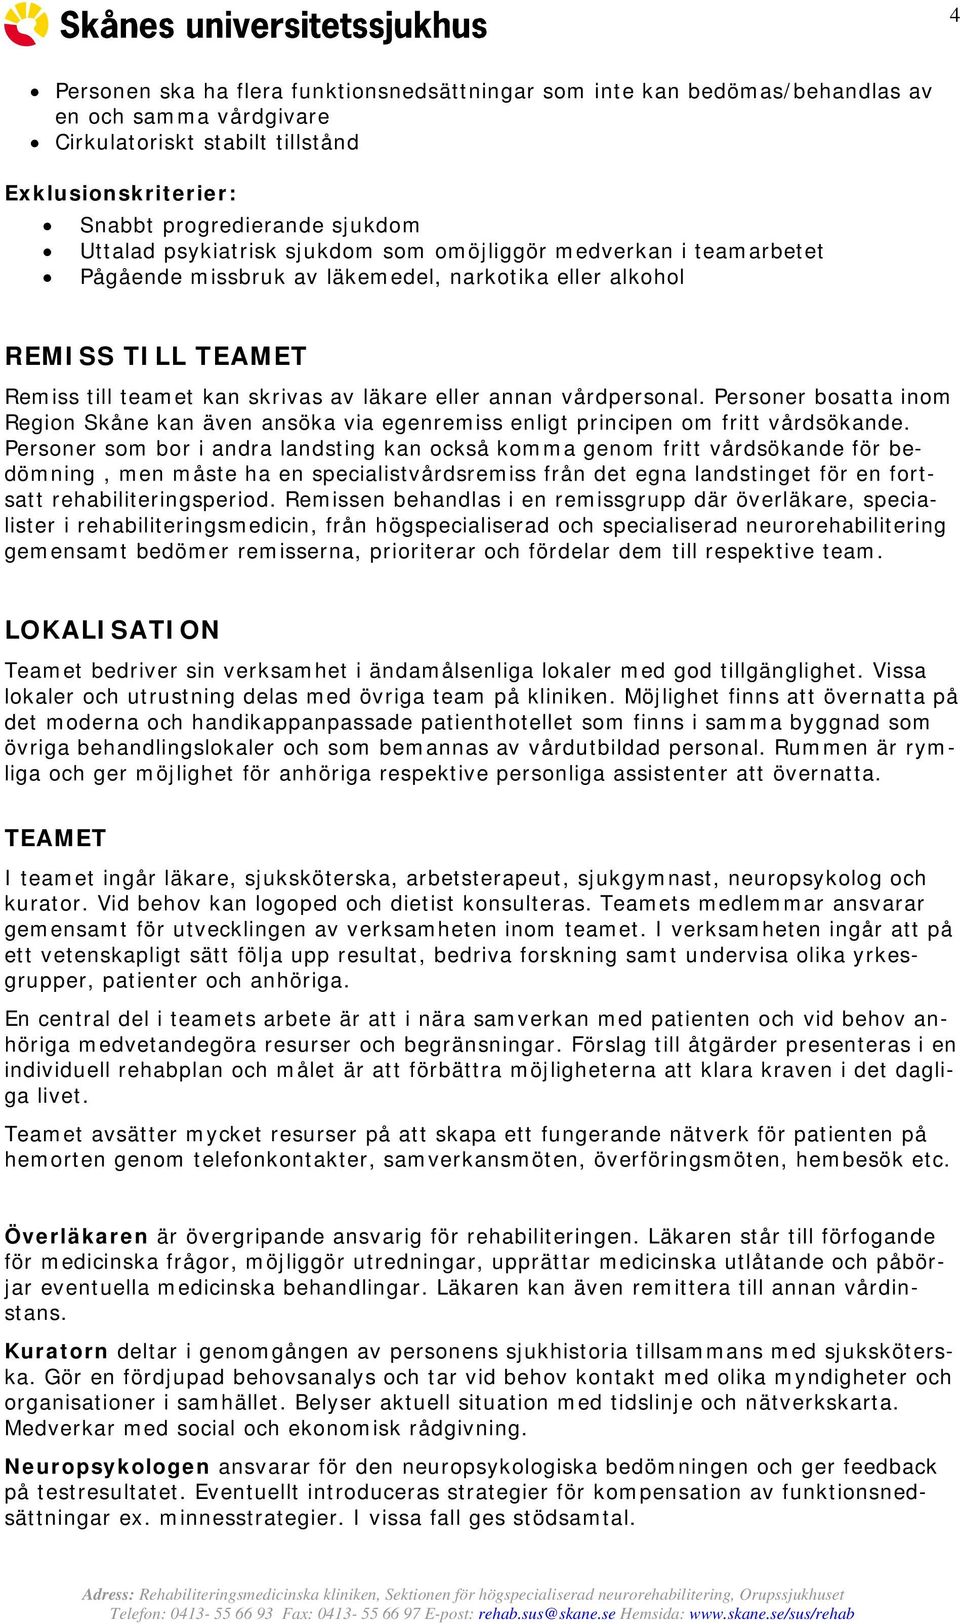 Personer bosatta inom Region Skåne kan även ansöka via egenremiss enligt principen om fritt vårdsökande.